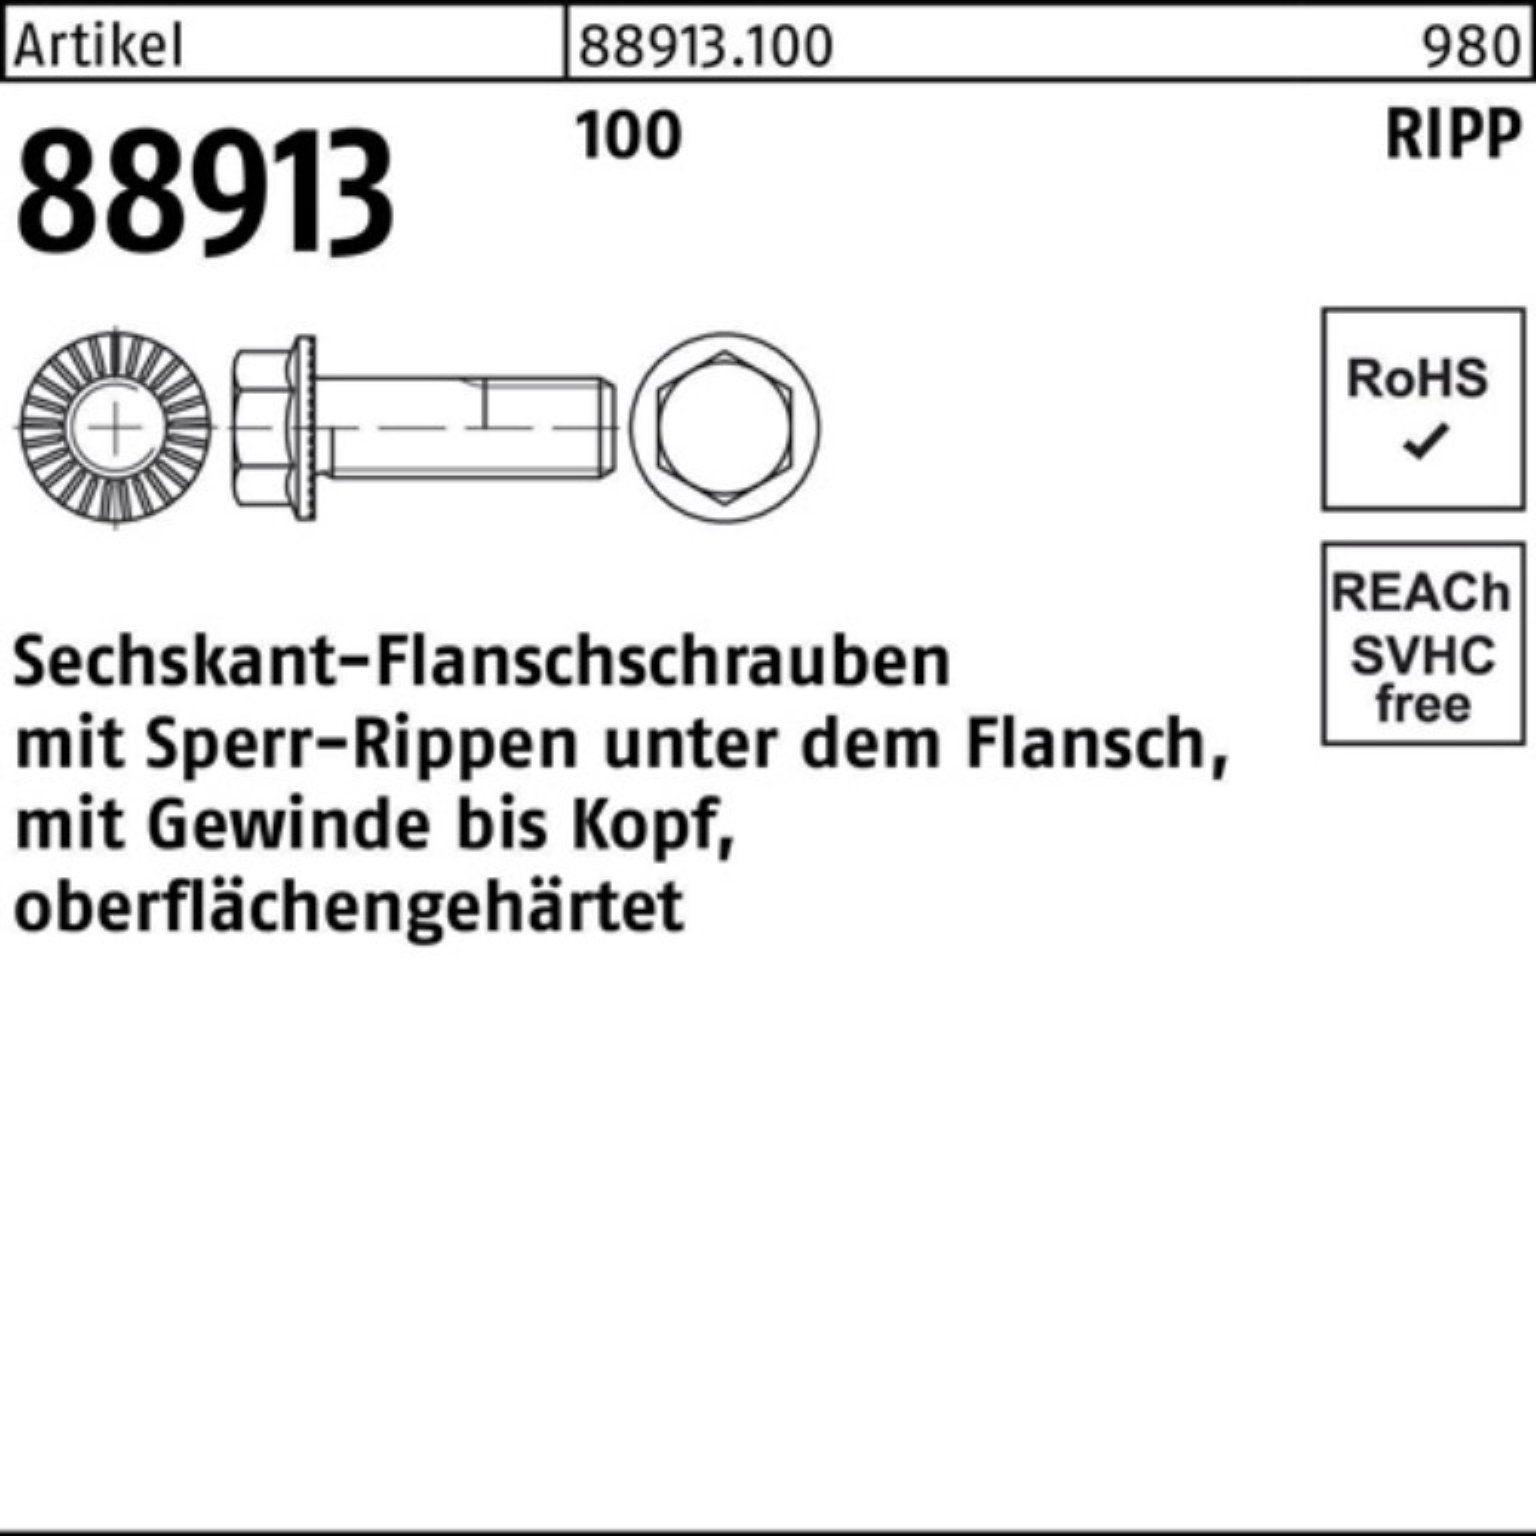 Sperr-Ripp 40 88913 Sechskantflanschschraube R 100er 100 Schraube Pack Reyher VG M10x